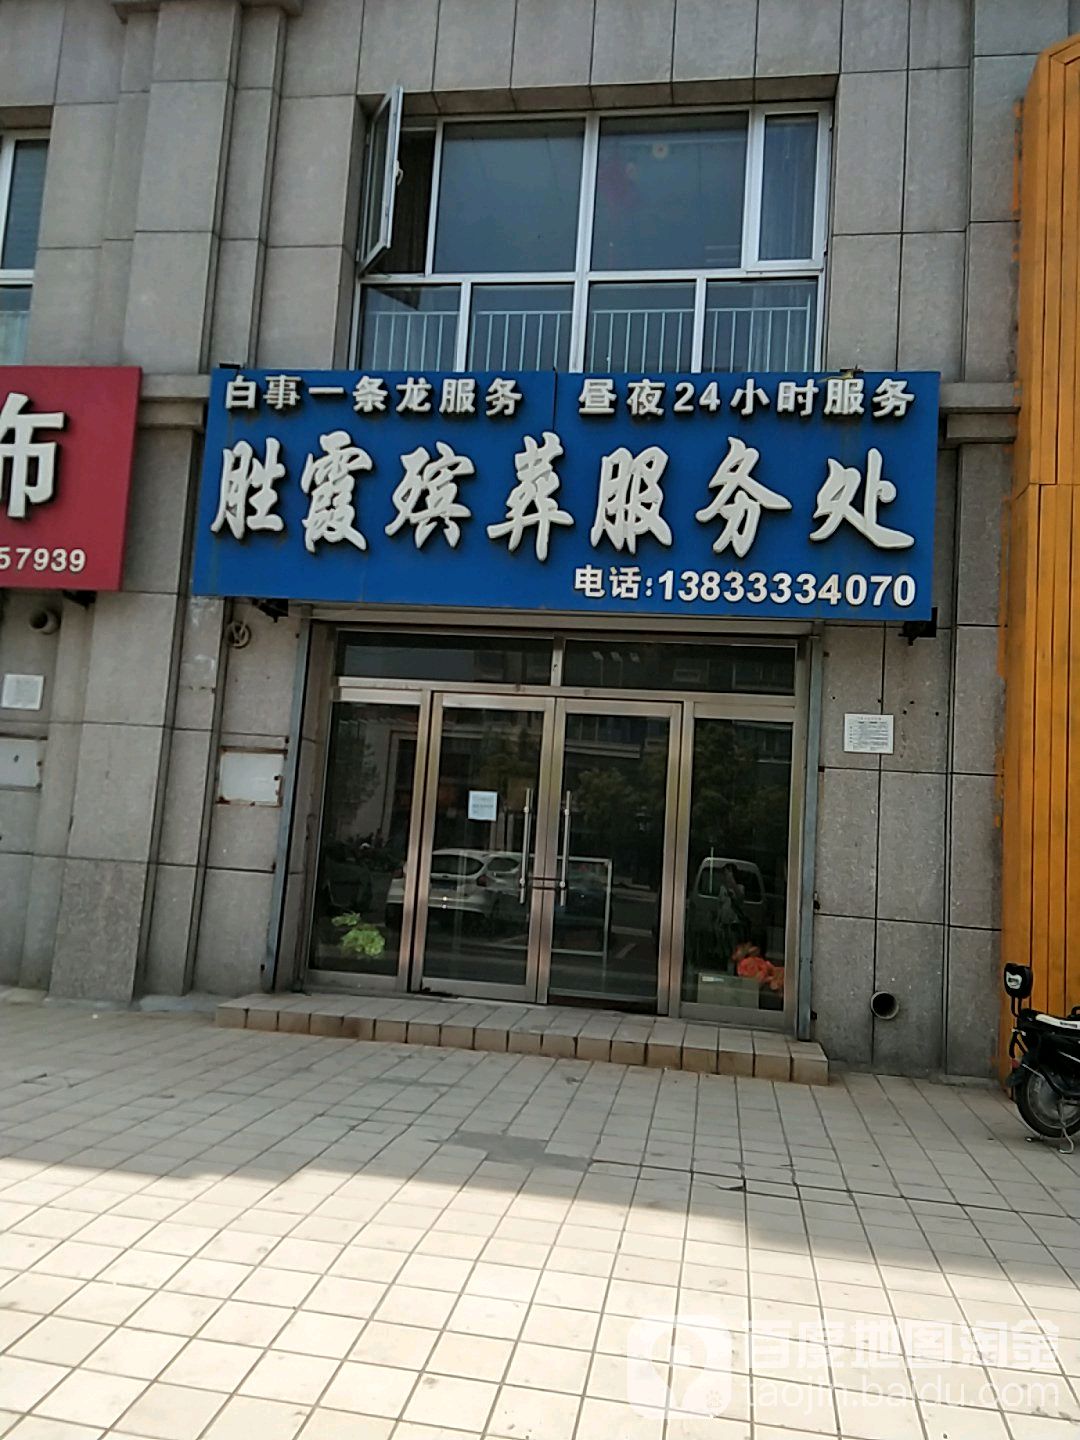 胜霞滨葬服务处